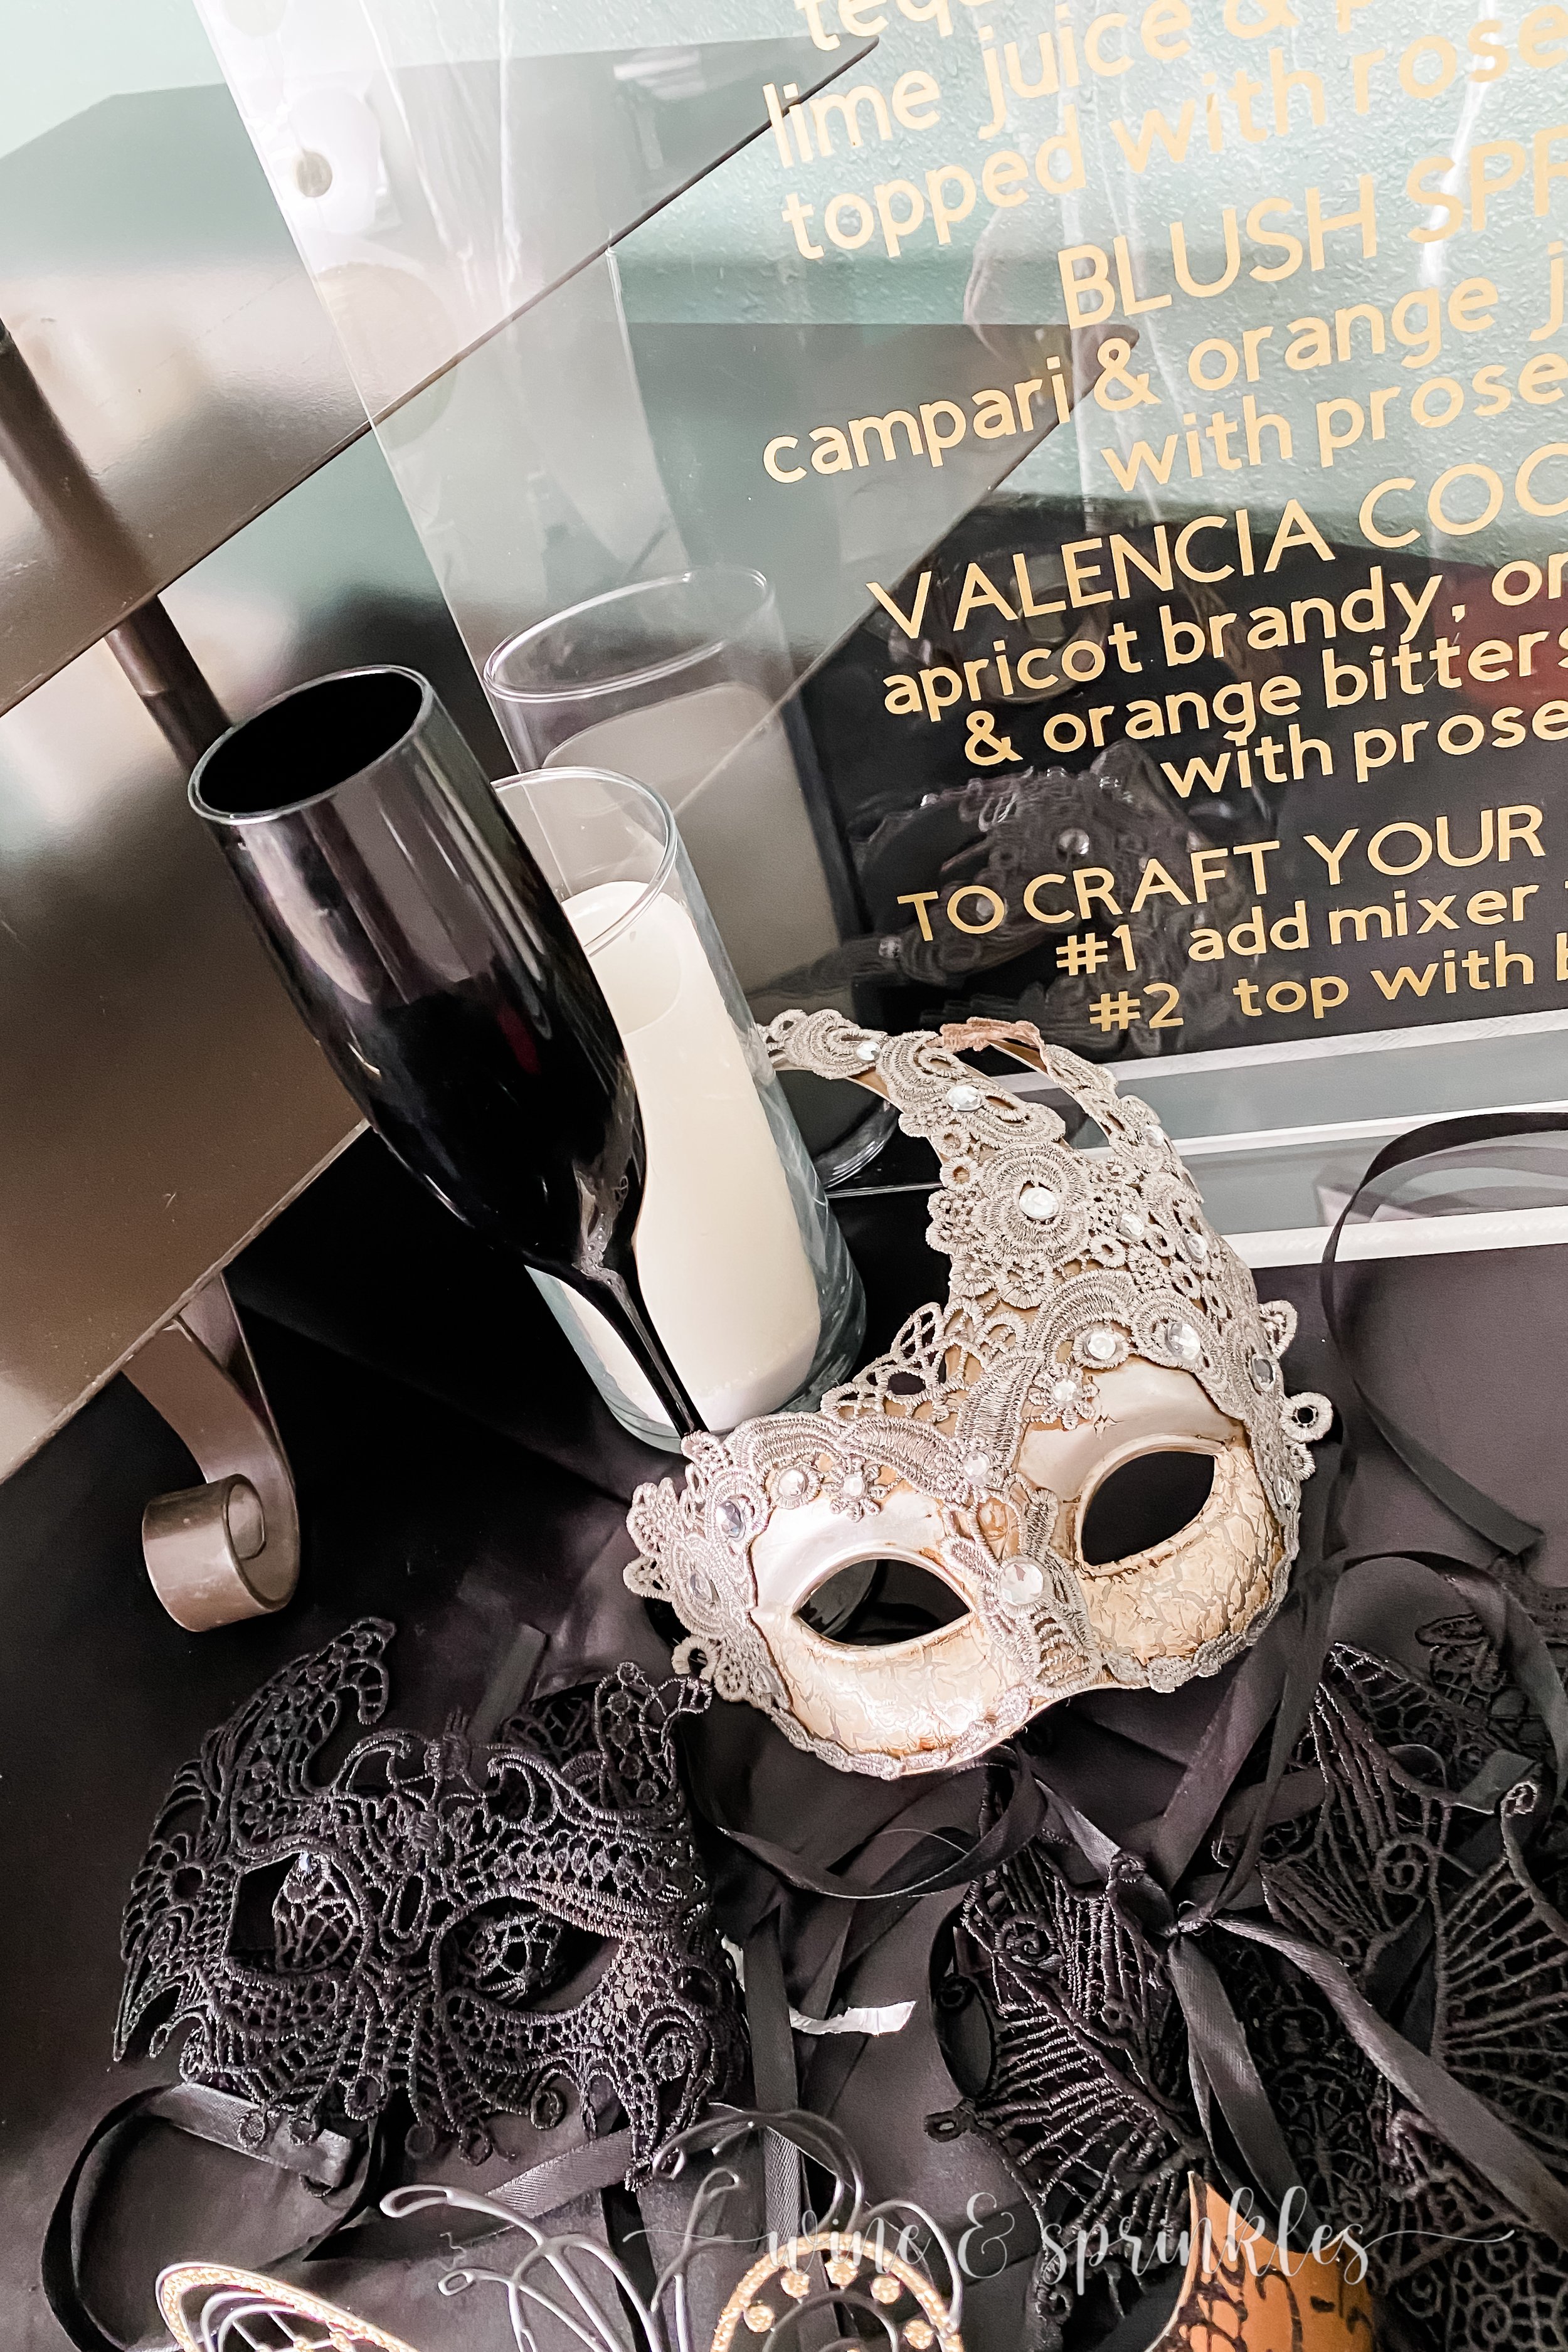 masquerade decorations